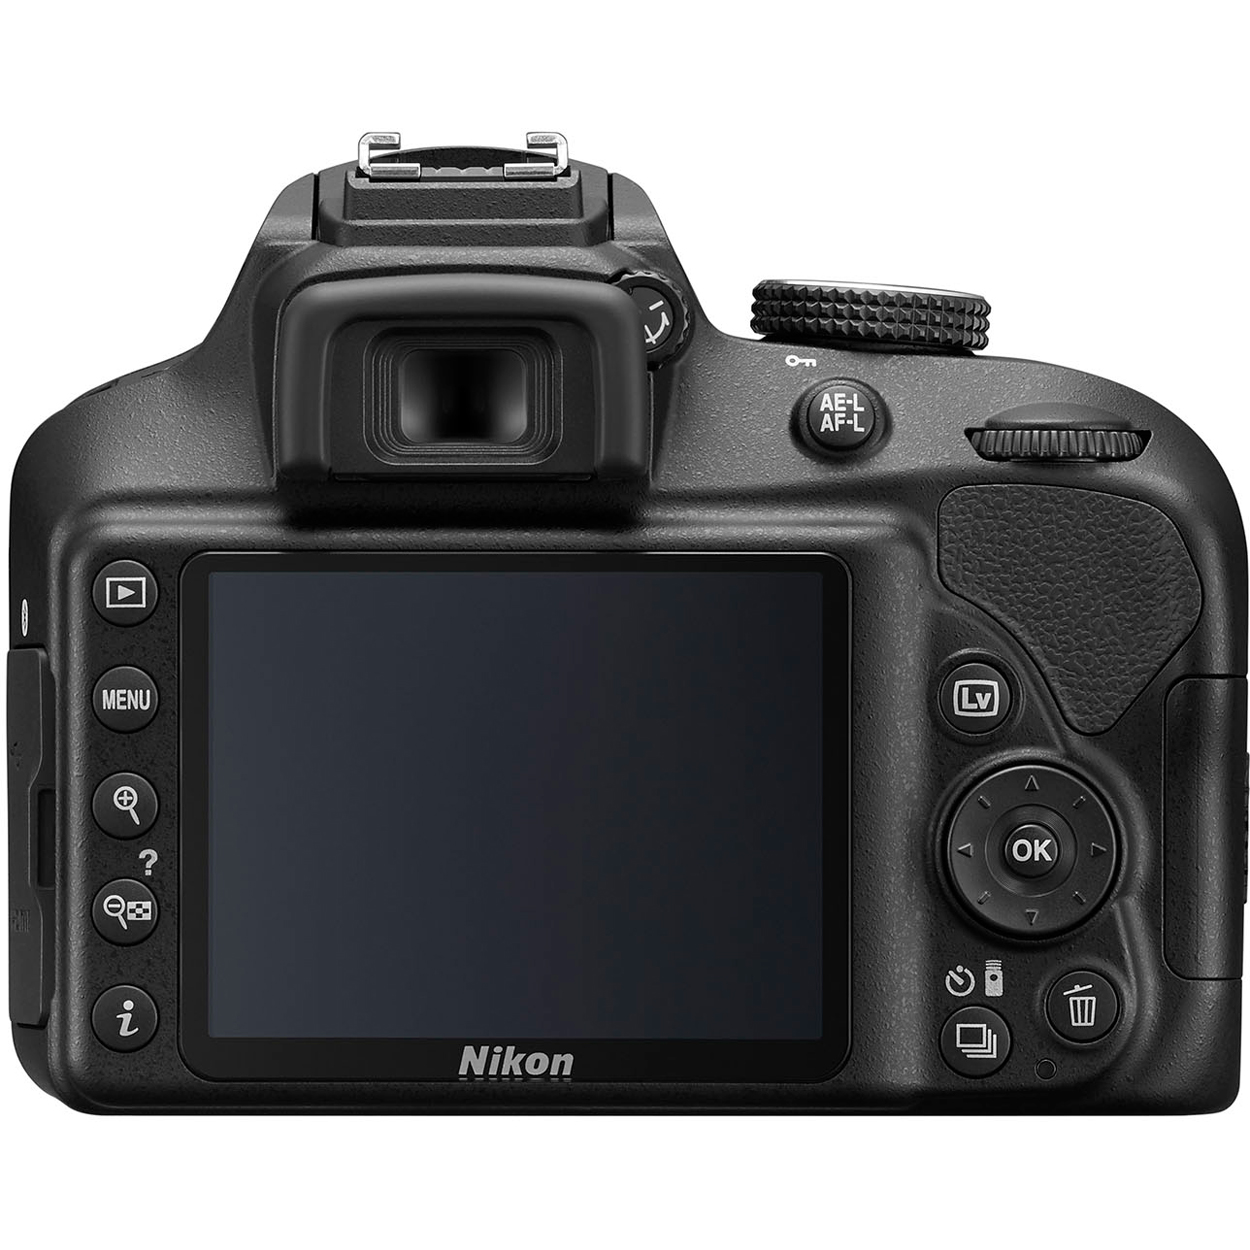 Nikon D3400/D3500 DSLR Camera with 18:55mm Lens (Black) & Sigma 70:300mm SLD DG Lens Package, Black Bundle 64GB SDXC Memory Card Supreme Bundle - image 8 of 10